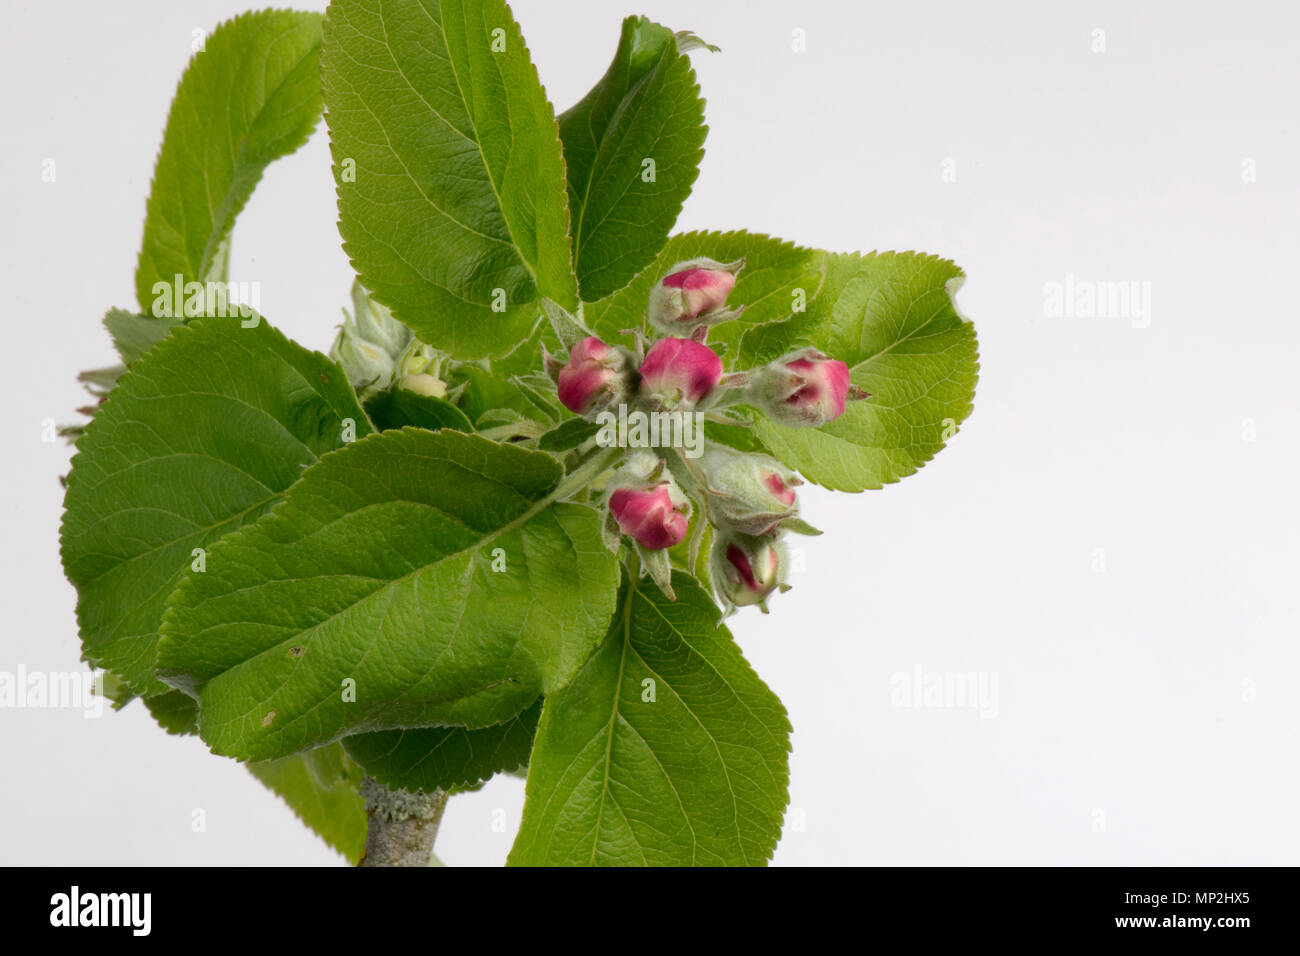 Blume öffnen Serie von Bildern eines Apple von rosa Knospe zu König Blume unter einer Rosette aus grünen Blättern im Frühjahr Stockfoto